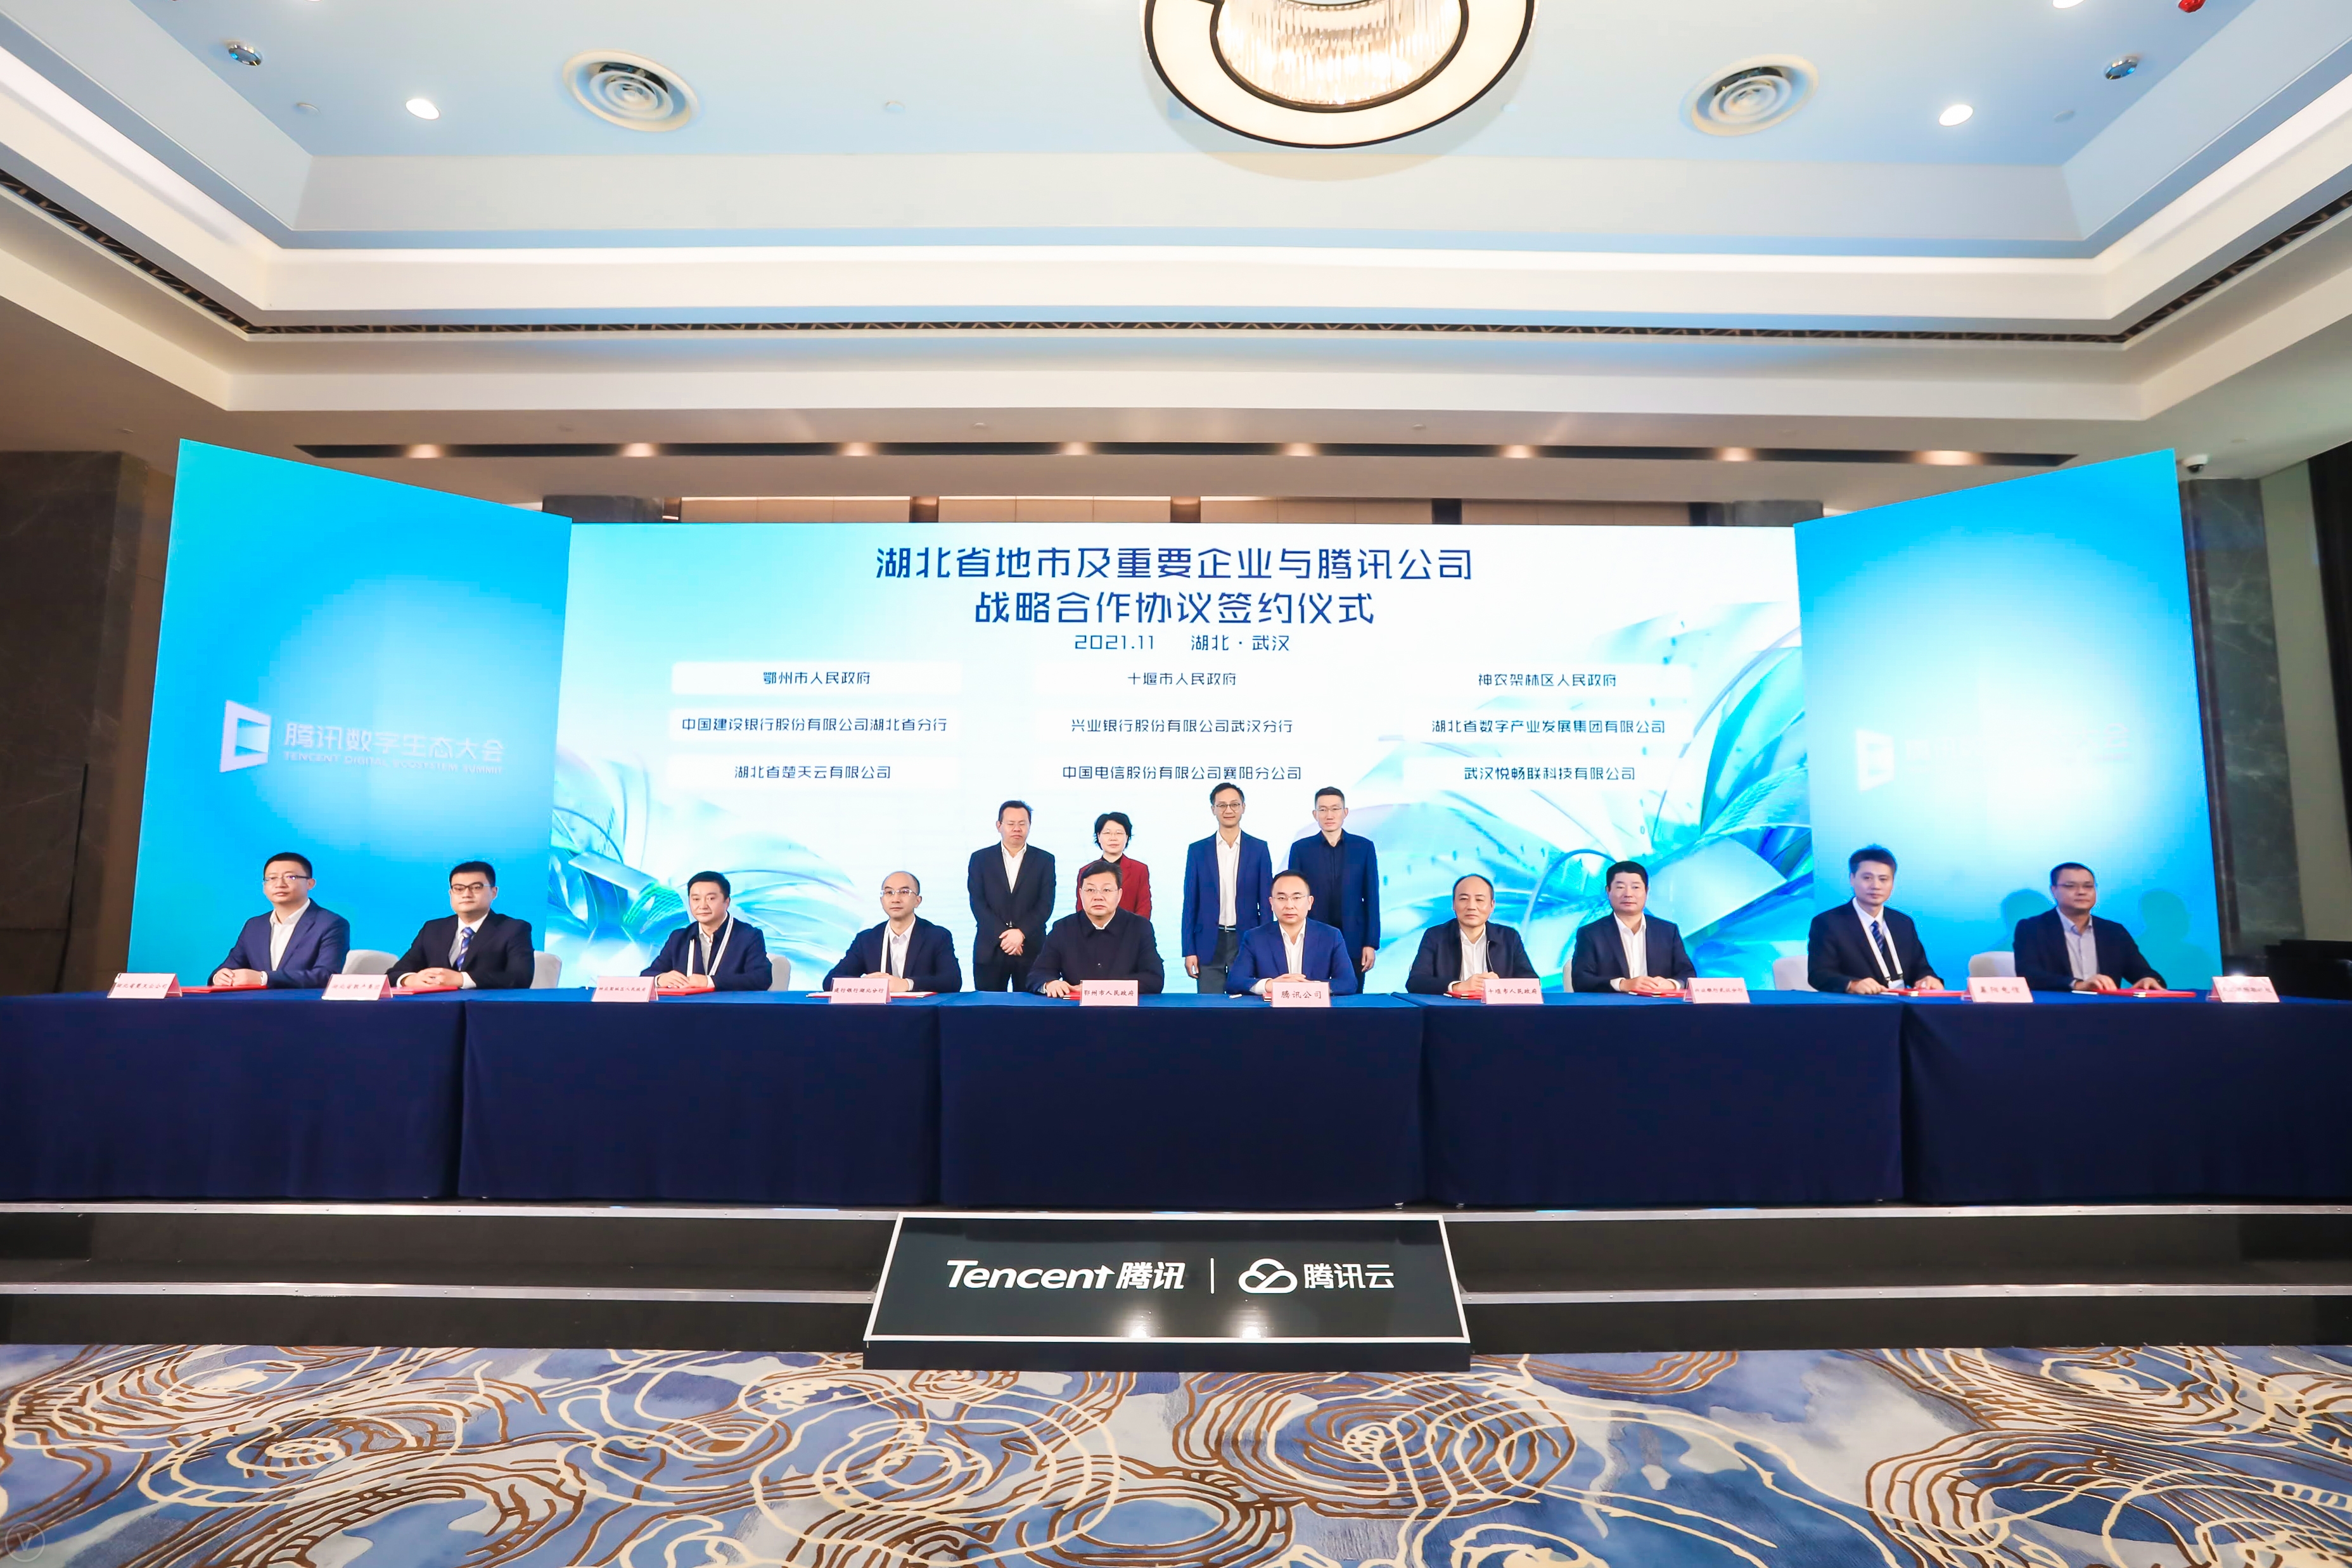 兴业银行武汉分行与腾讯签署战略合作协议  为湖北省智慧城市发展注入澎湃动力